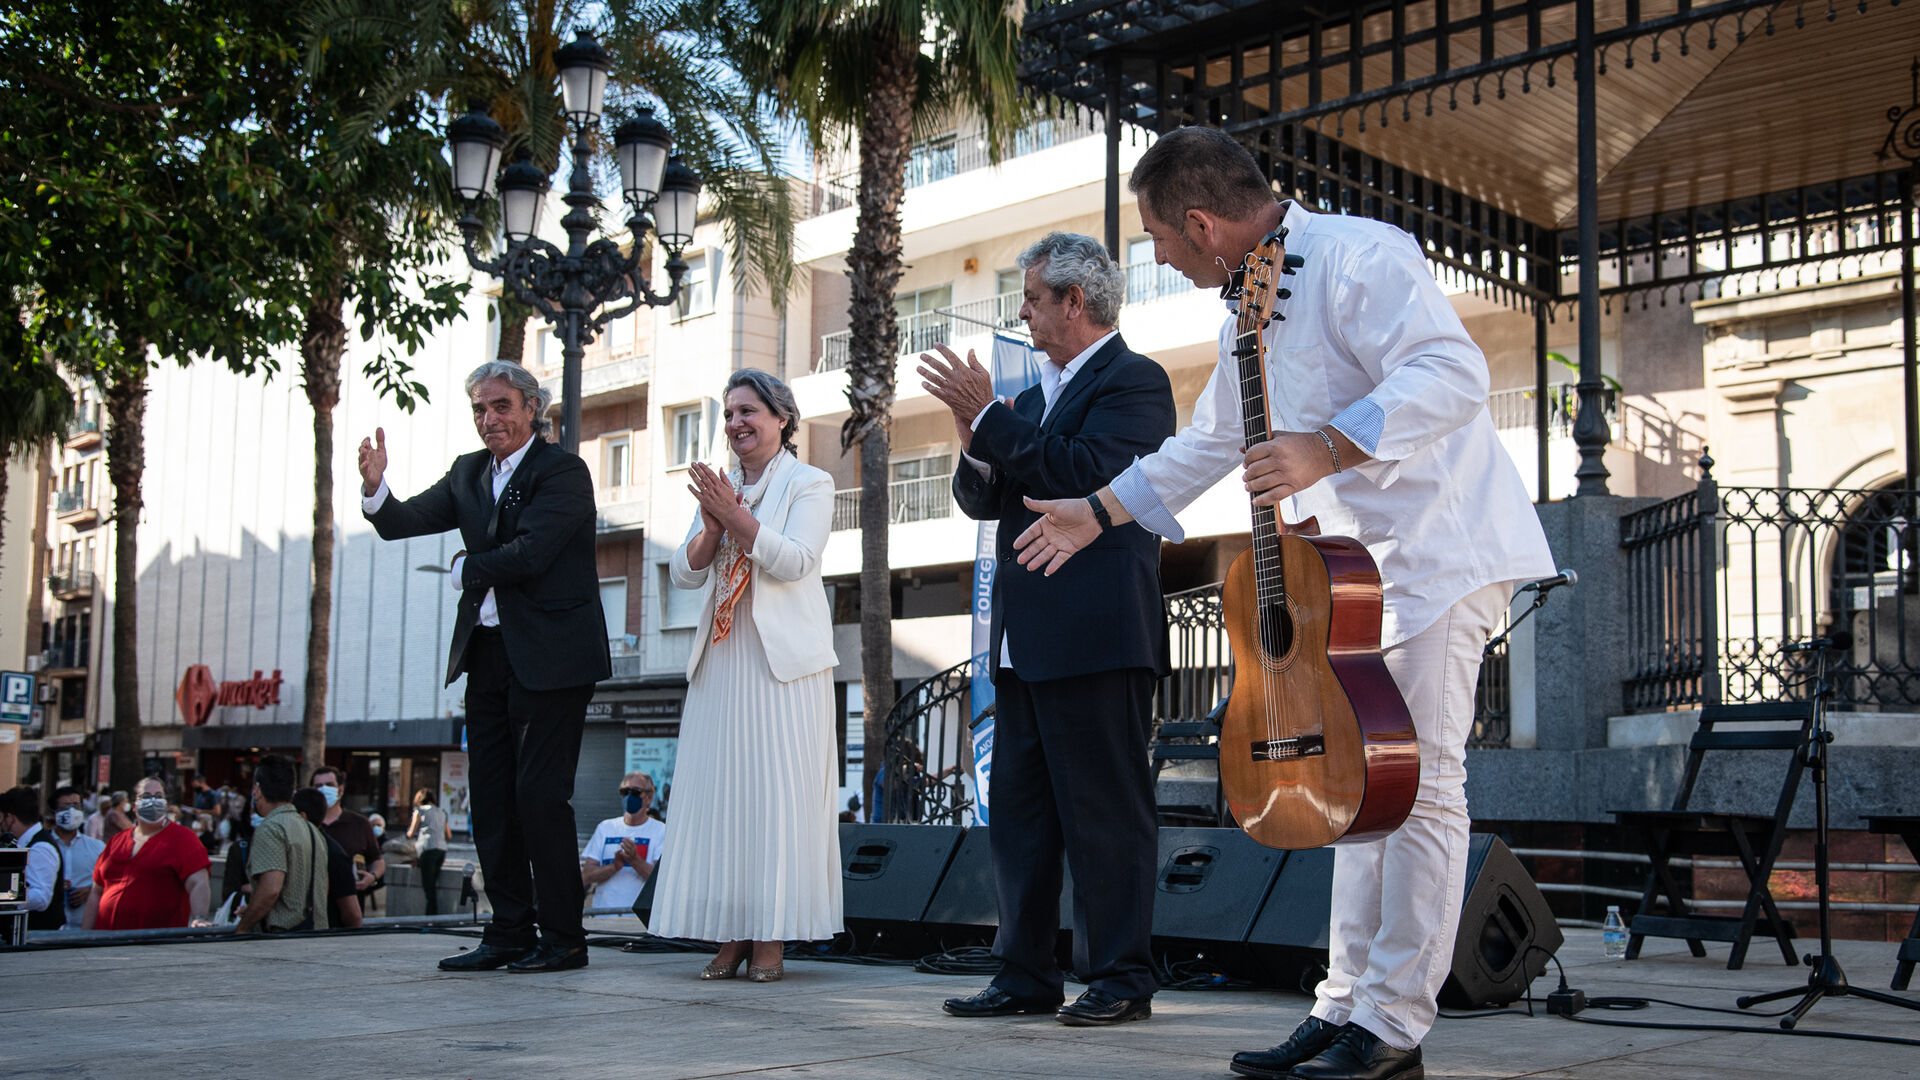 Im&aacute;genes de la pe&ntilde;a Huelva en el festival flamenco Ciudad de Huelva